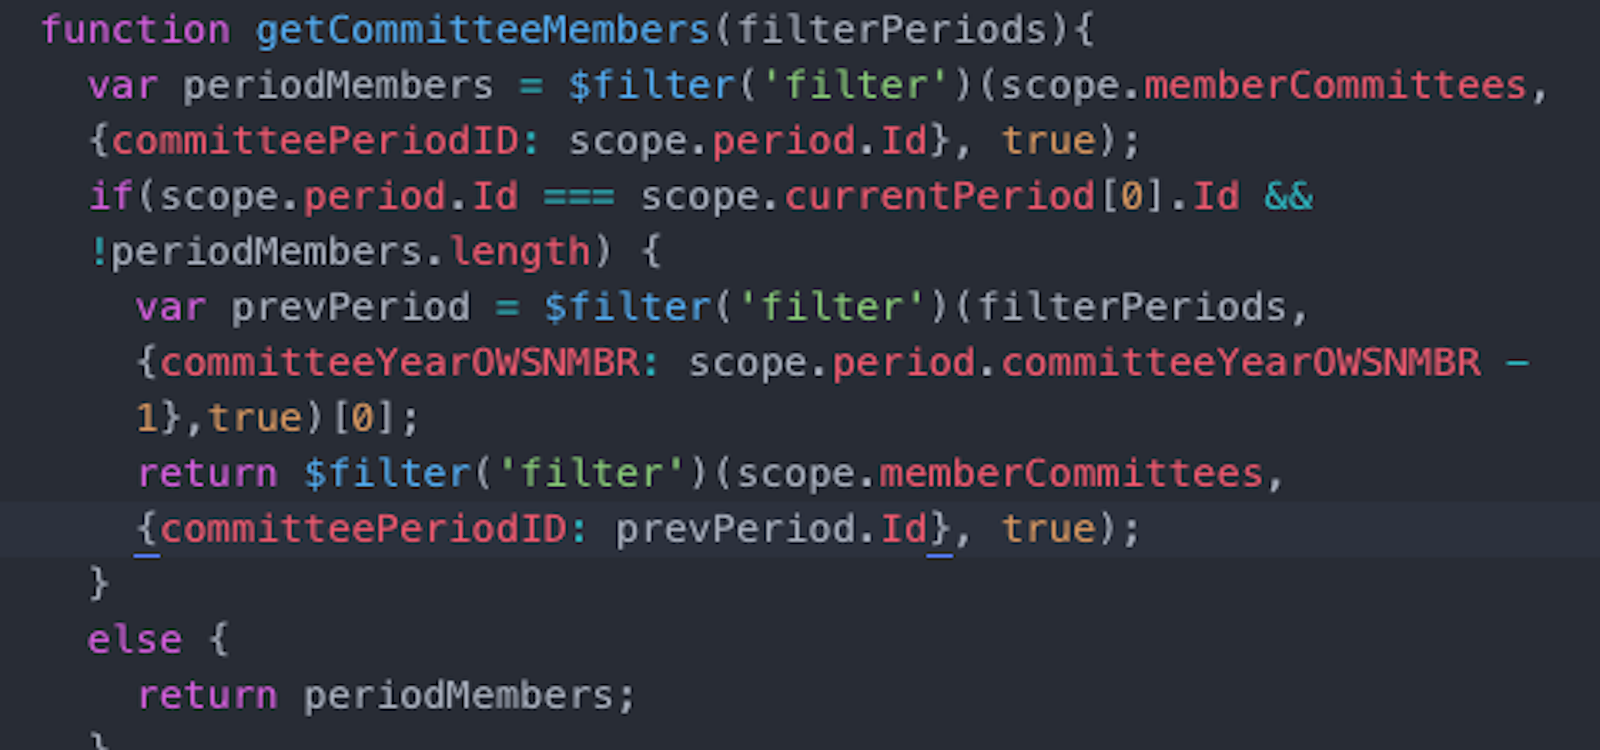 Code example